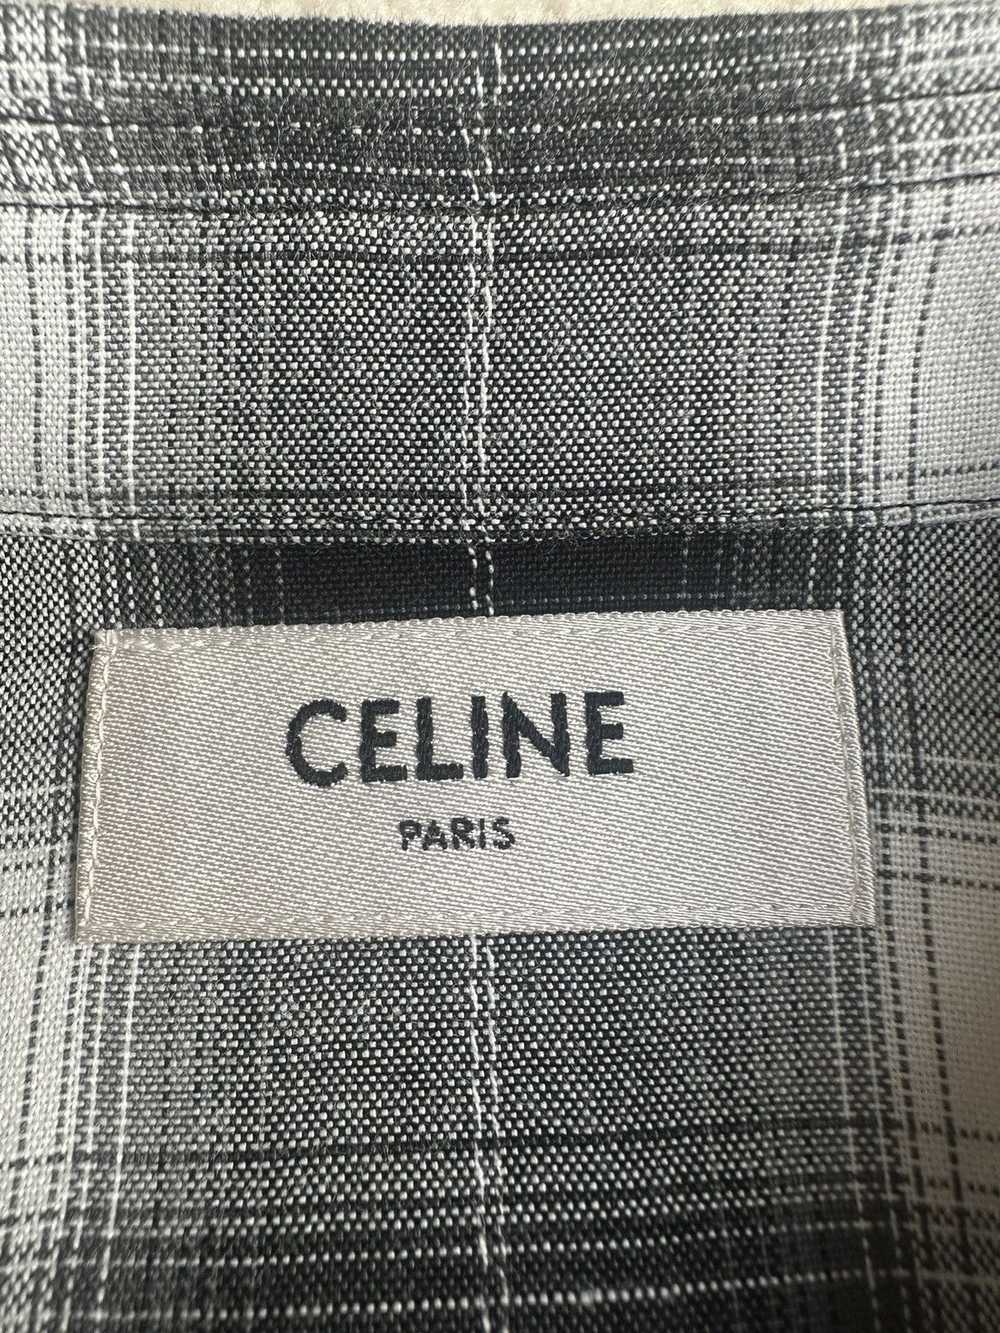 Celine SS19 Celine short sleeve flannel black whi… - image 10